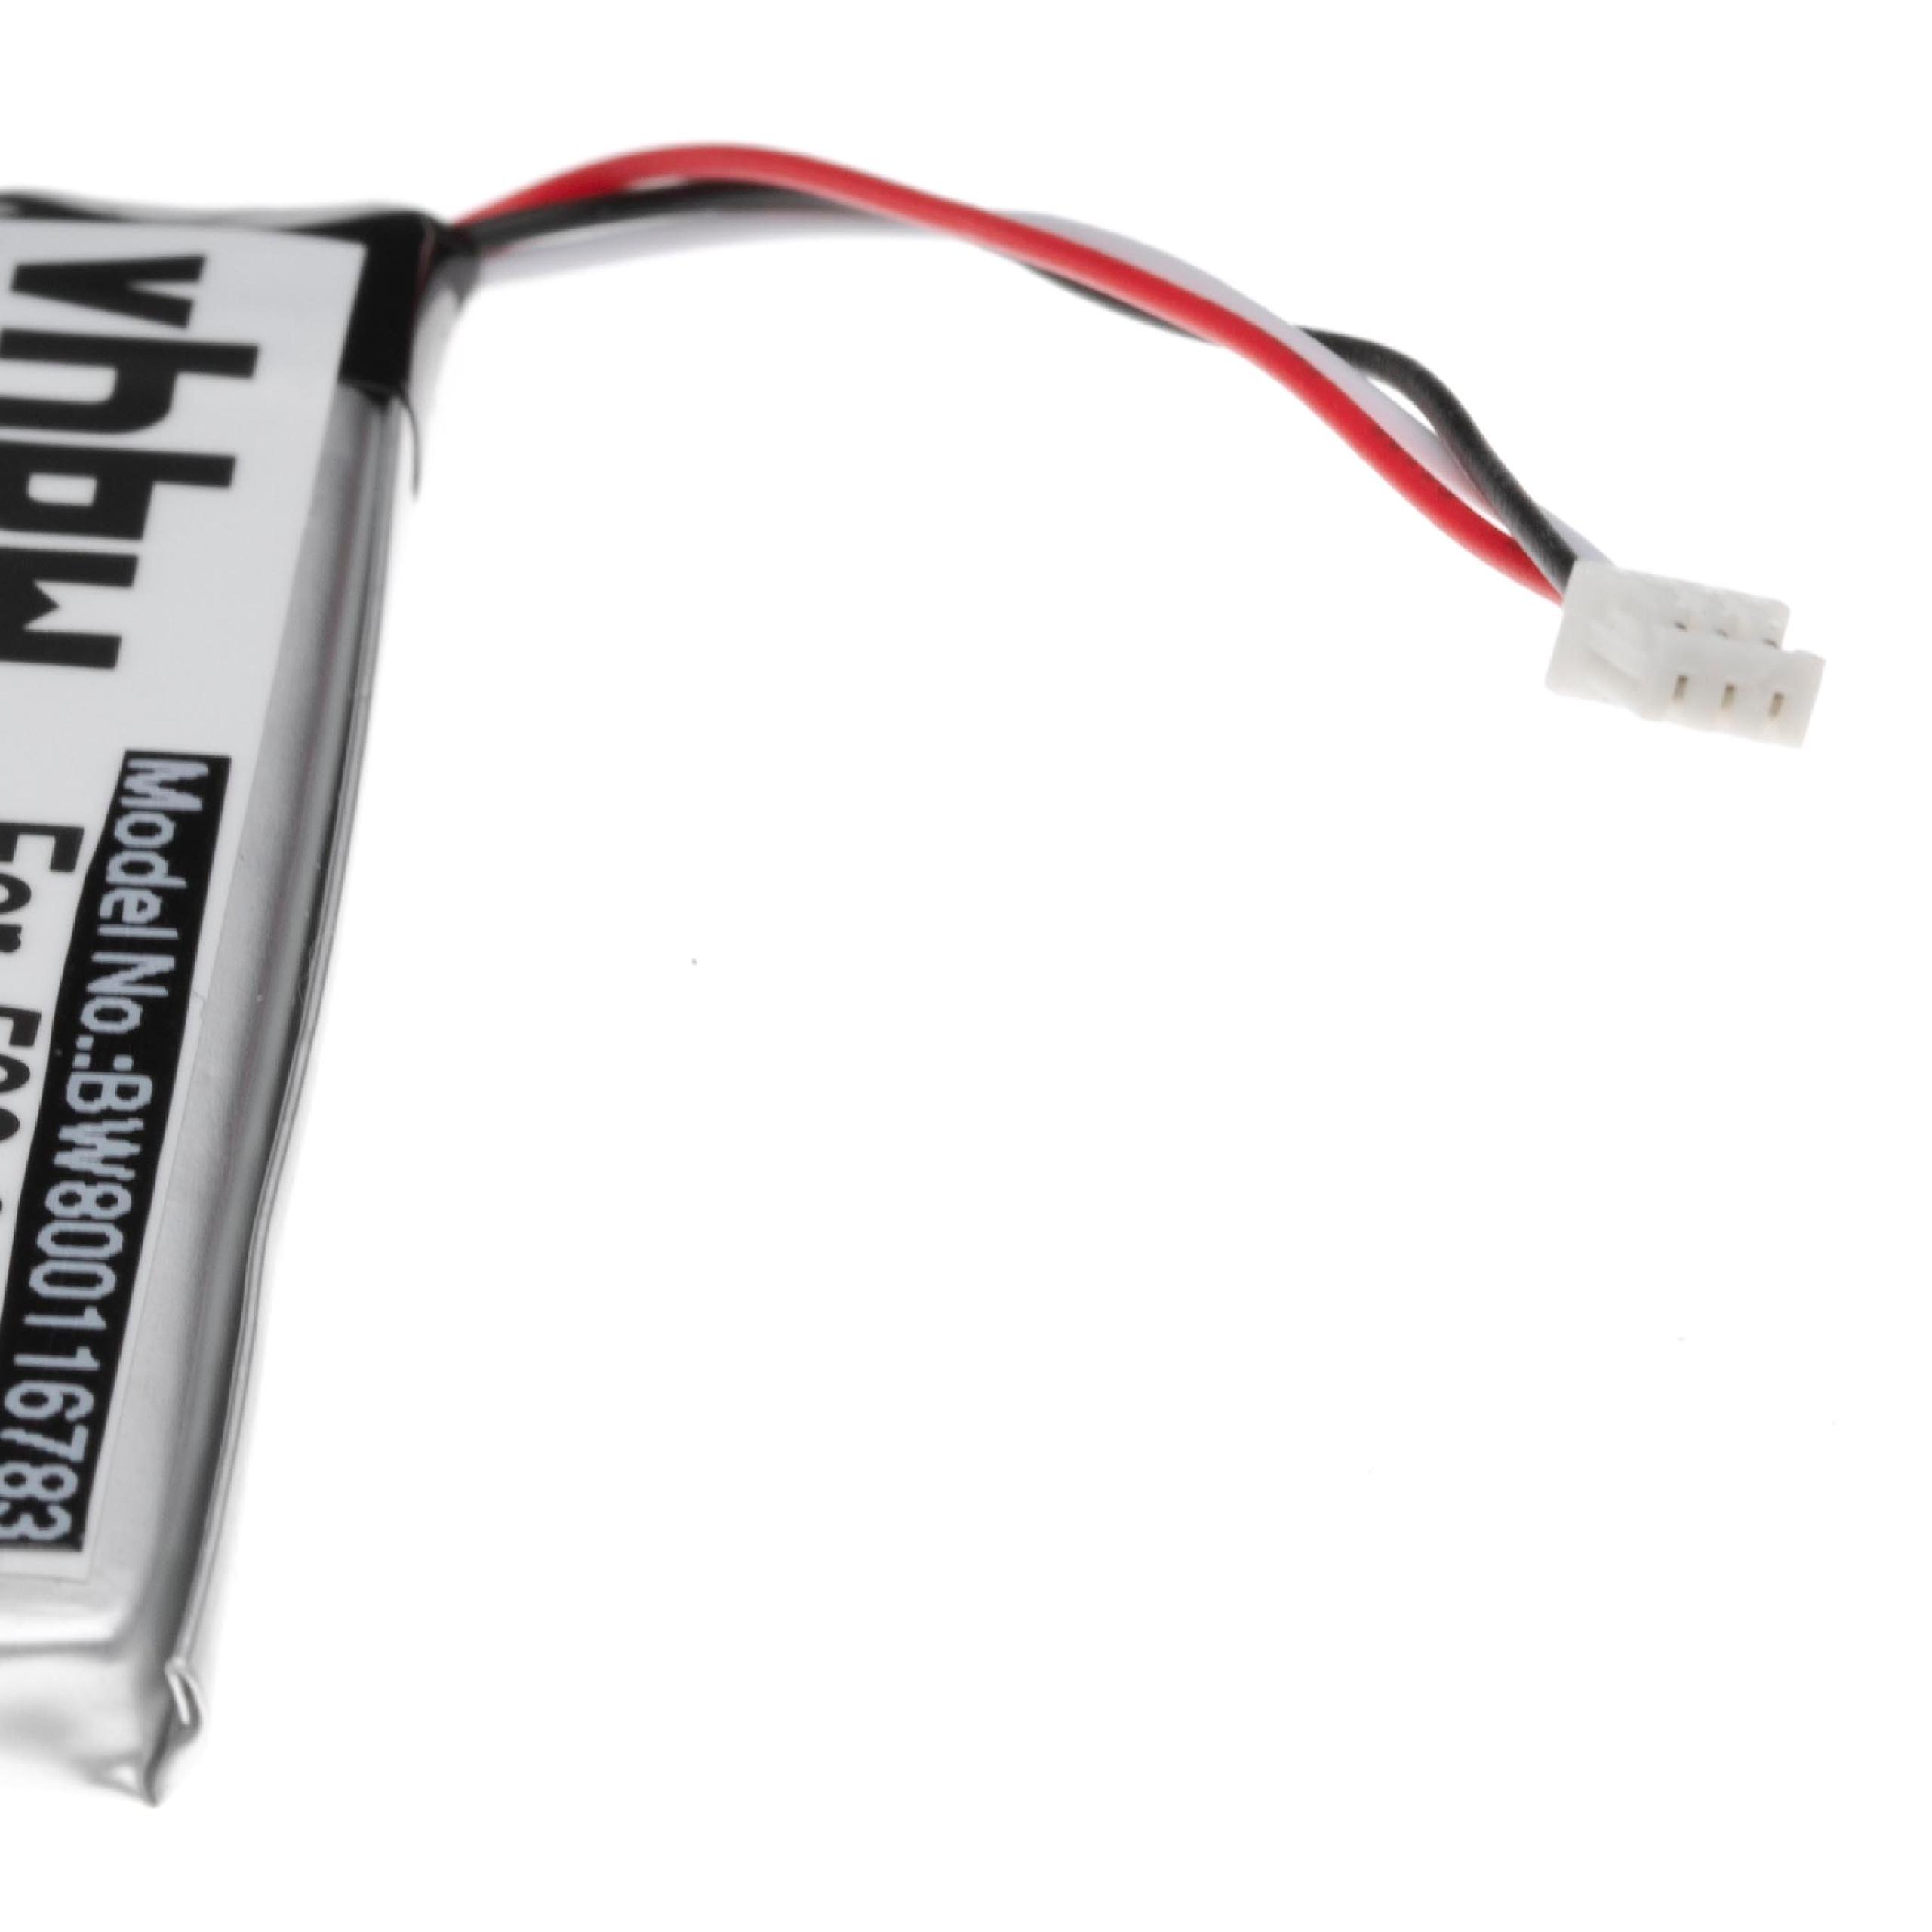 Akumulator do słuchawek bezprzewodowych zamiennik Logitech 533-000132 - 1200 mAh 3,7 V LiPo